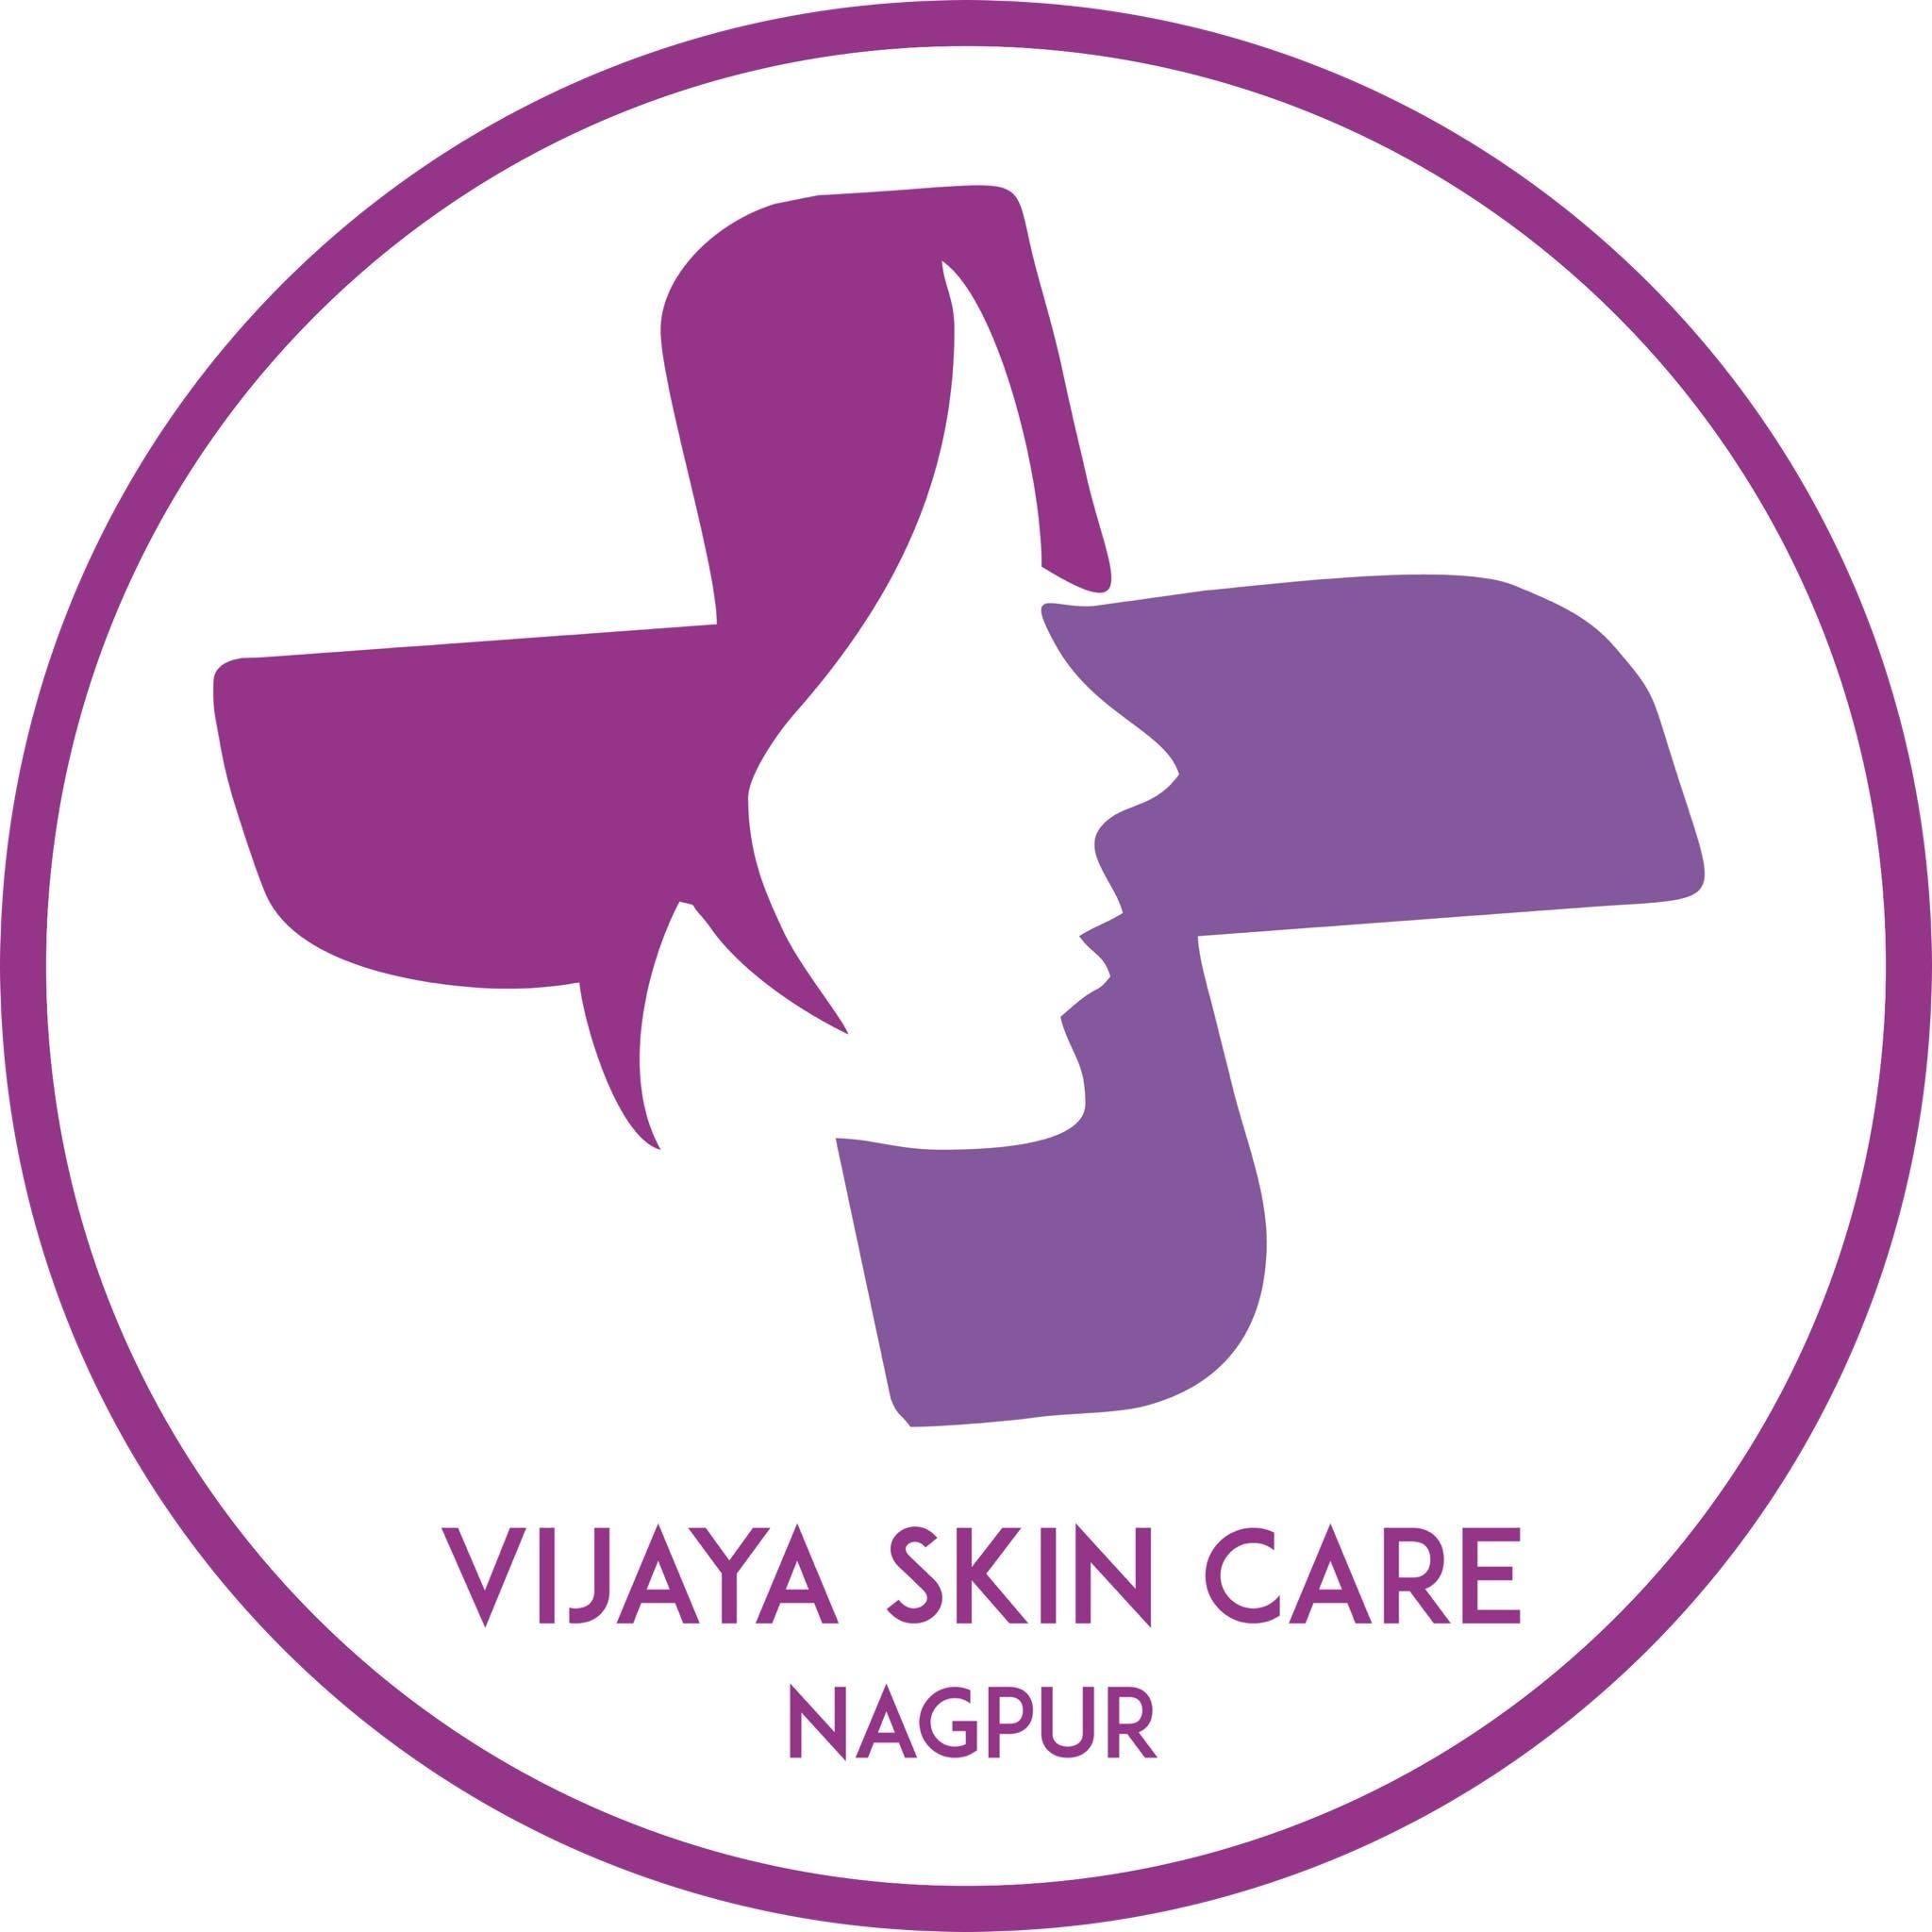 Vijaya Skin Care